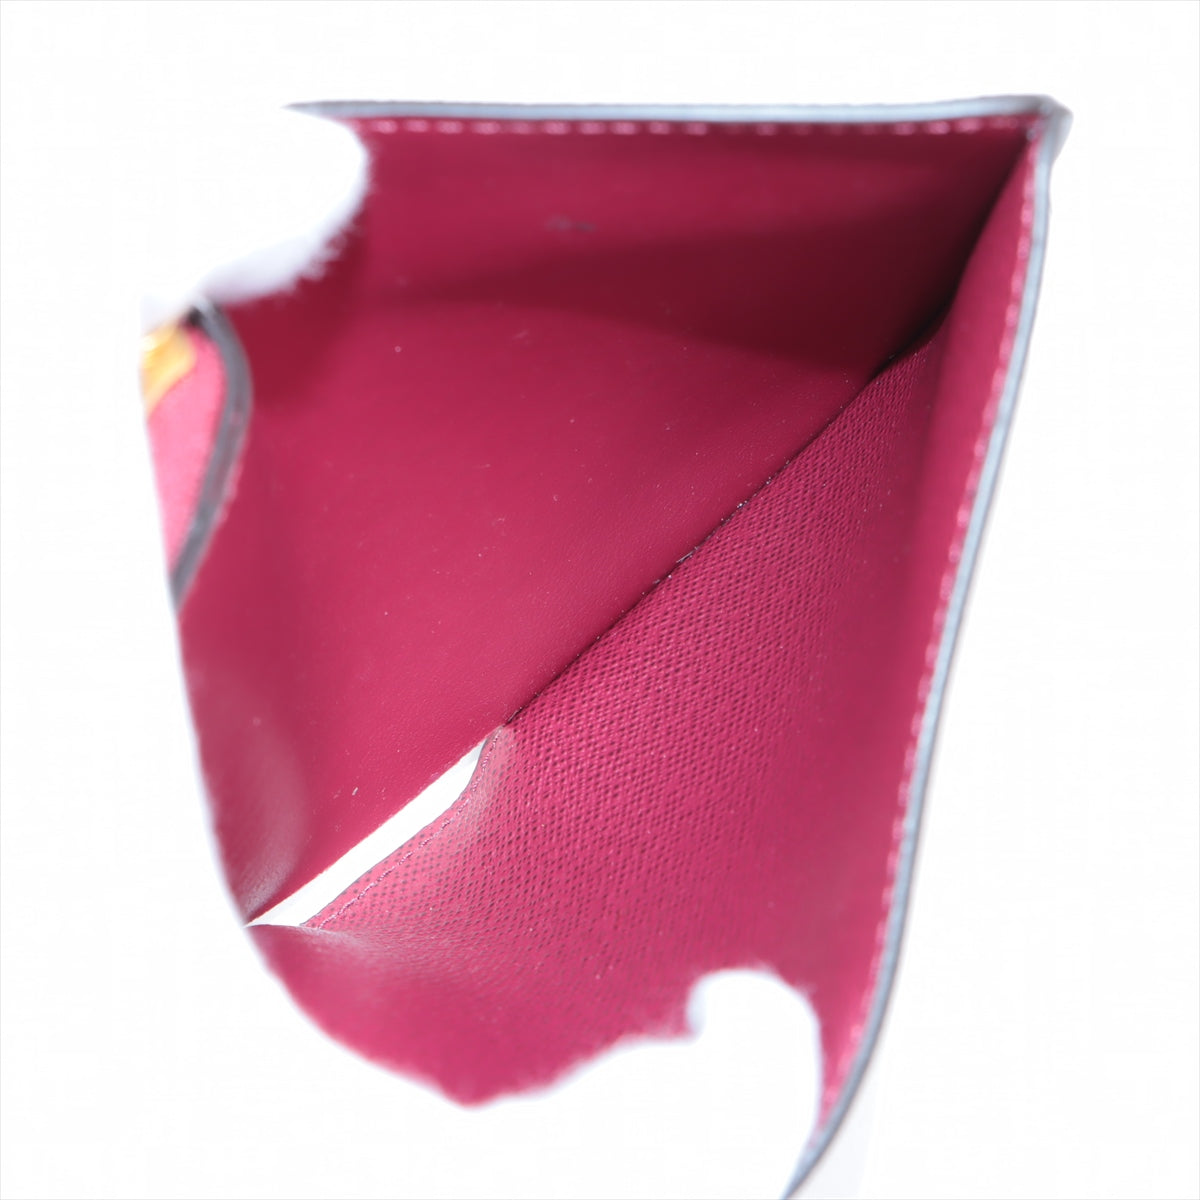 Louis Vuitton Monogram Portefeuilles Roux M82377 Fuschia pink Compact Wallet